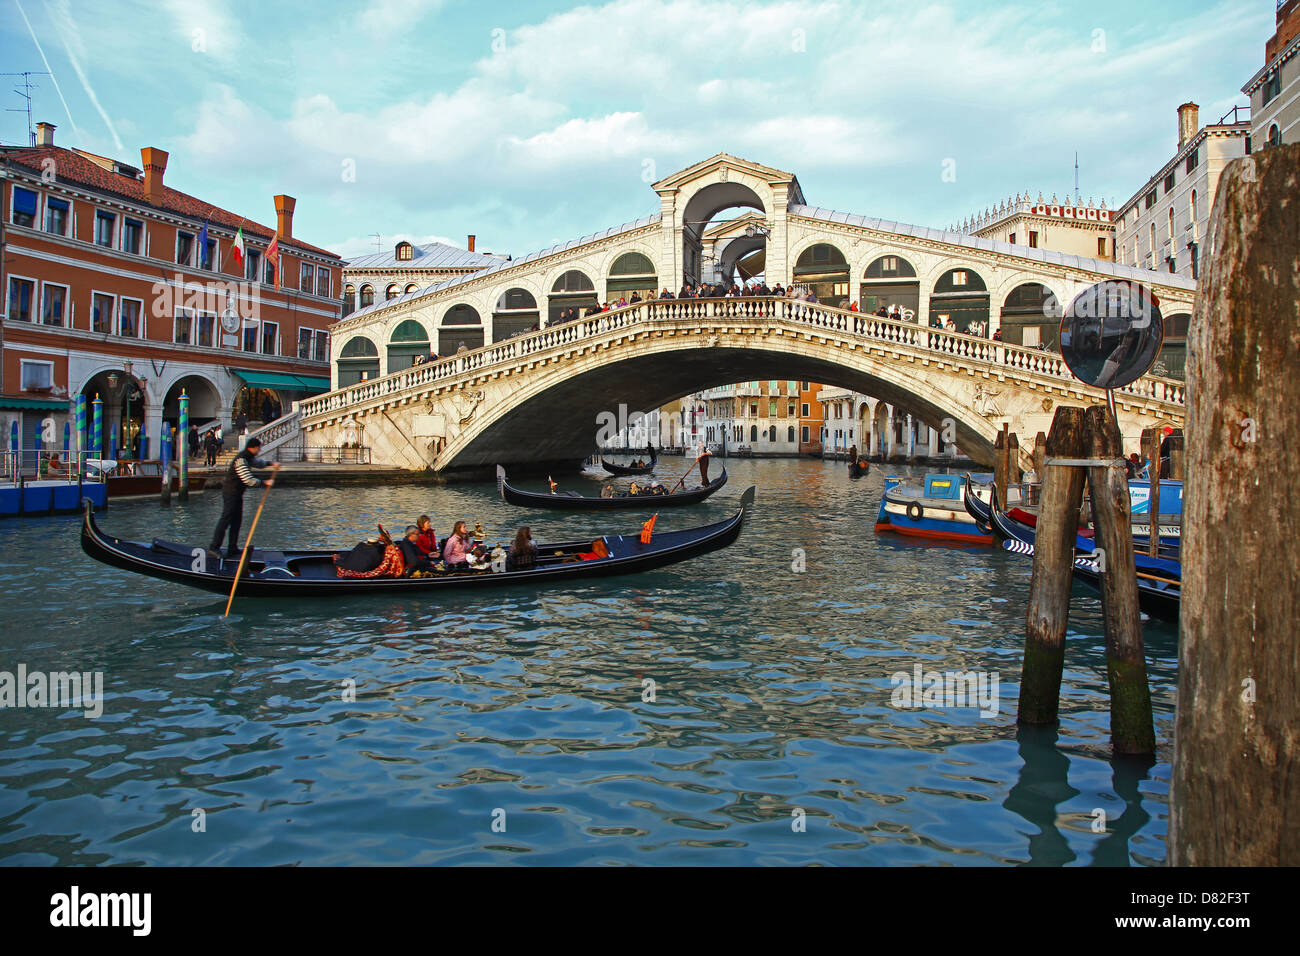 El Puente de Rialto Grand Canal Venecia Italia y góndola. Foto de stock